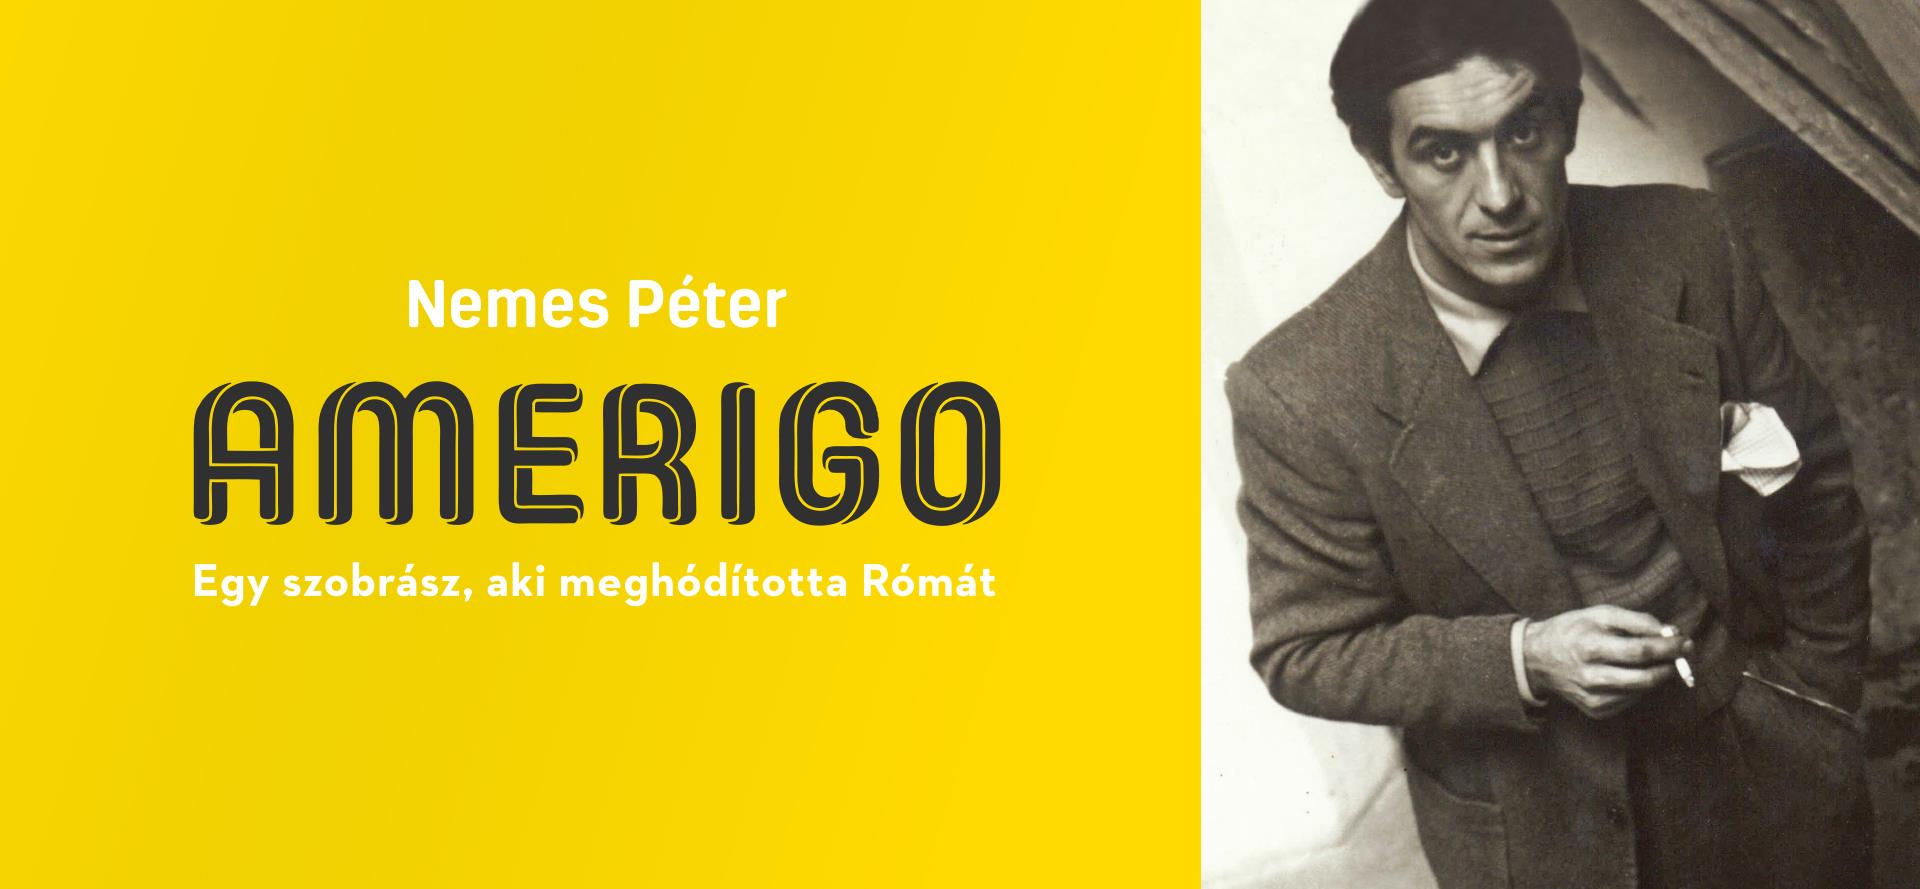 Nemes Péter Amerigo című könyve is esélyes az idei Margó-díjra